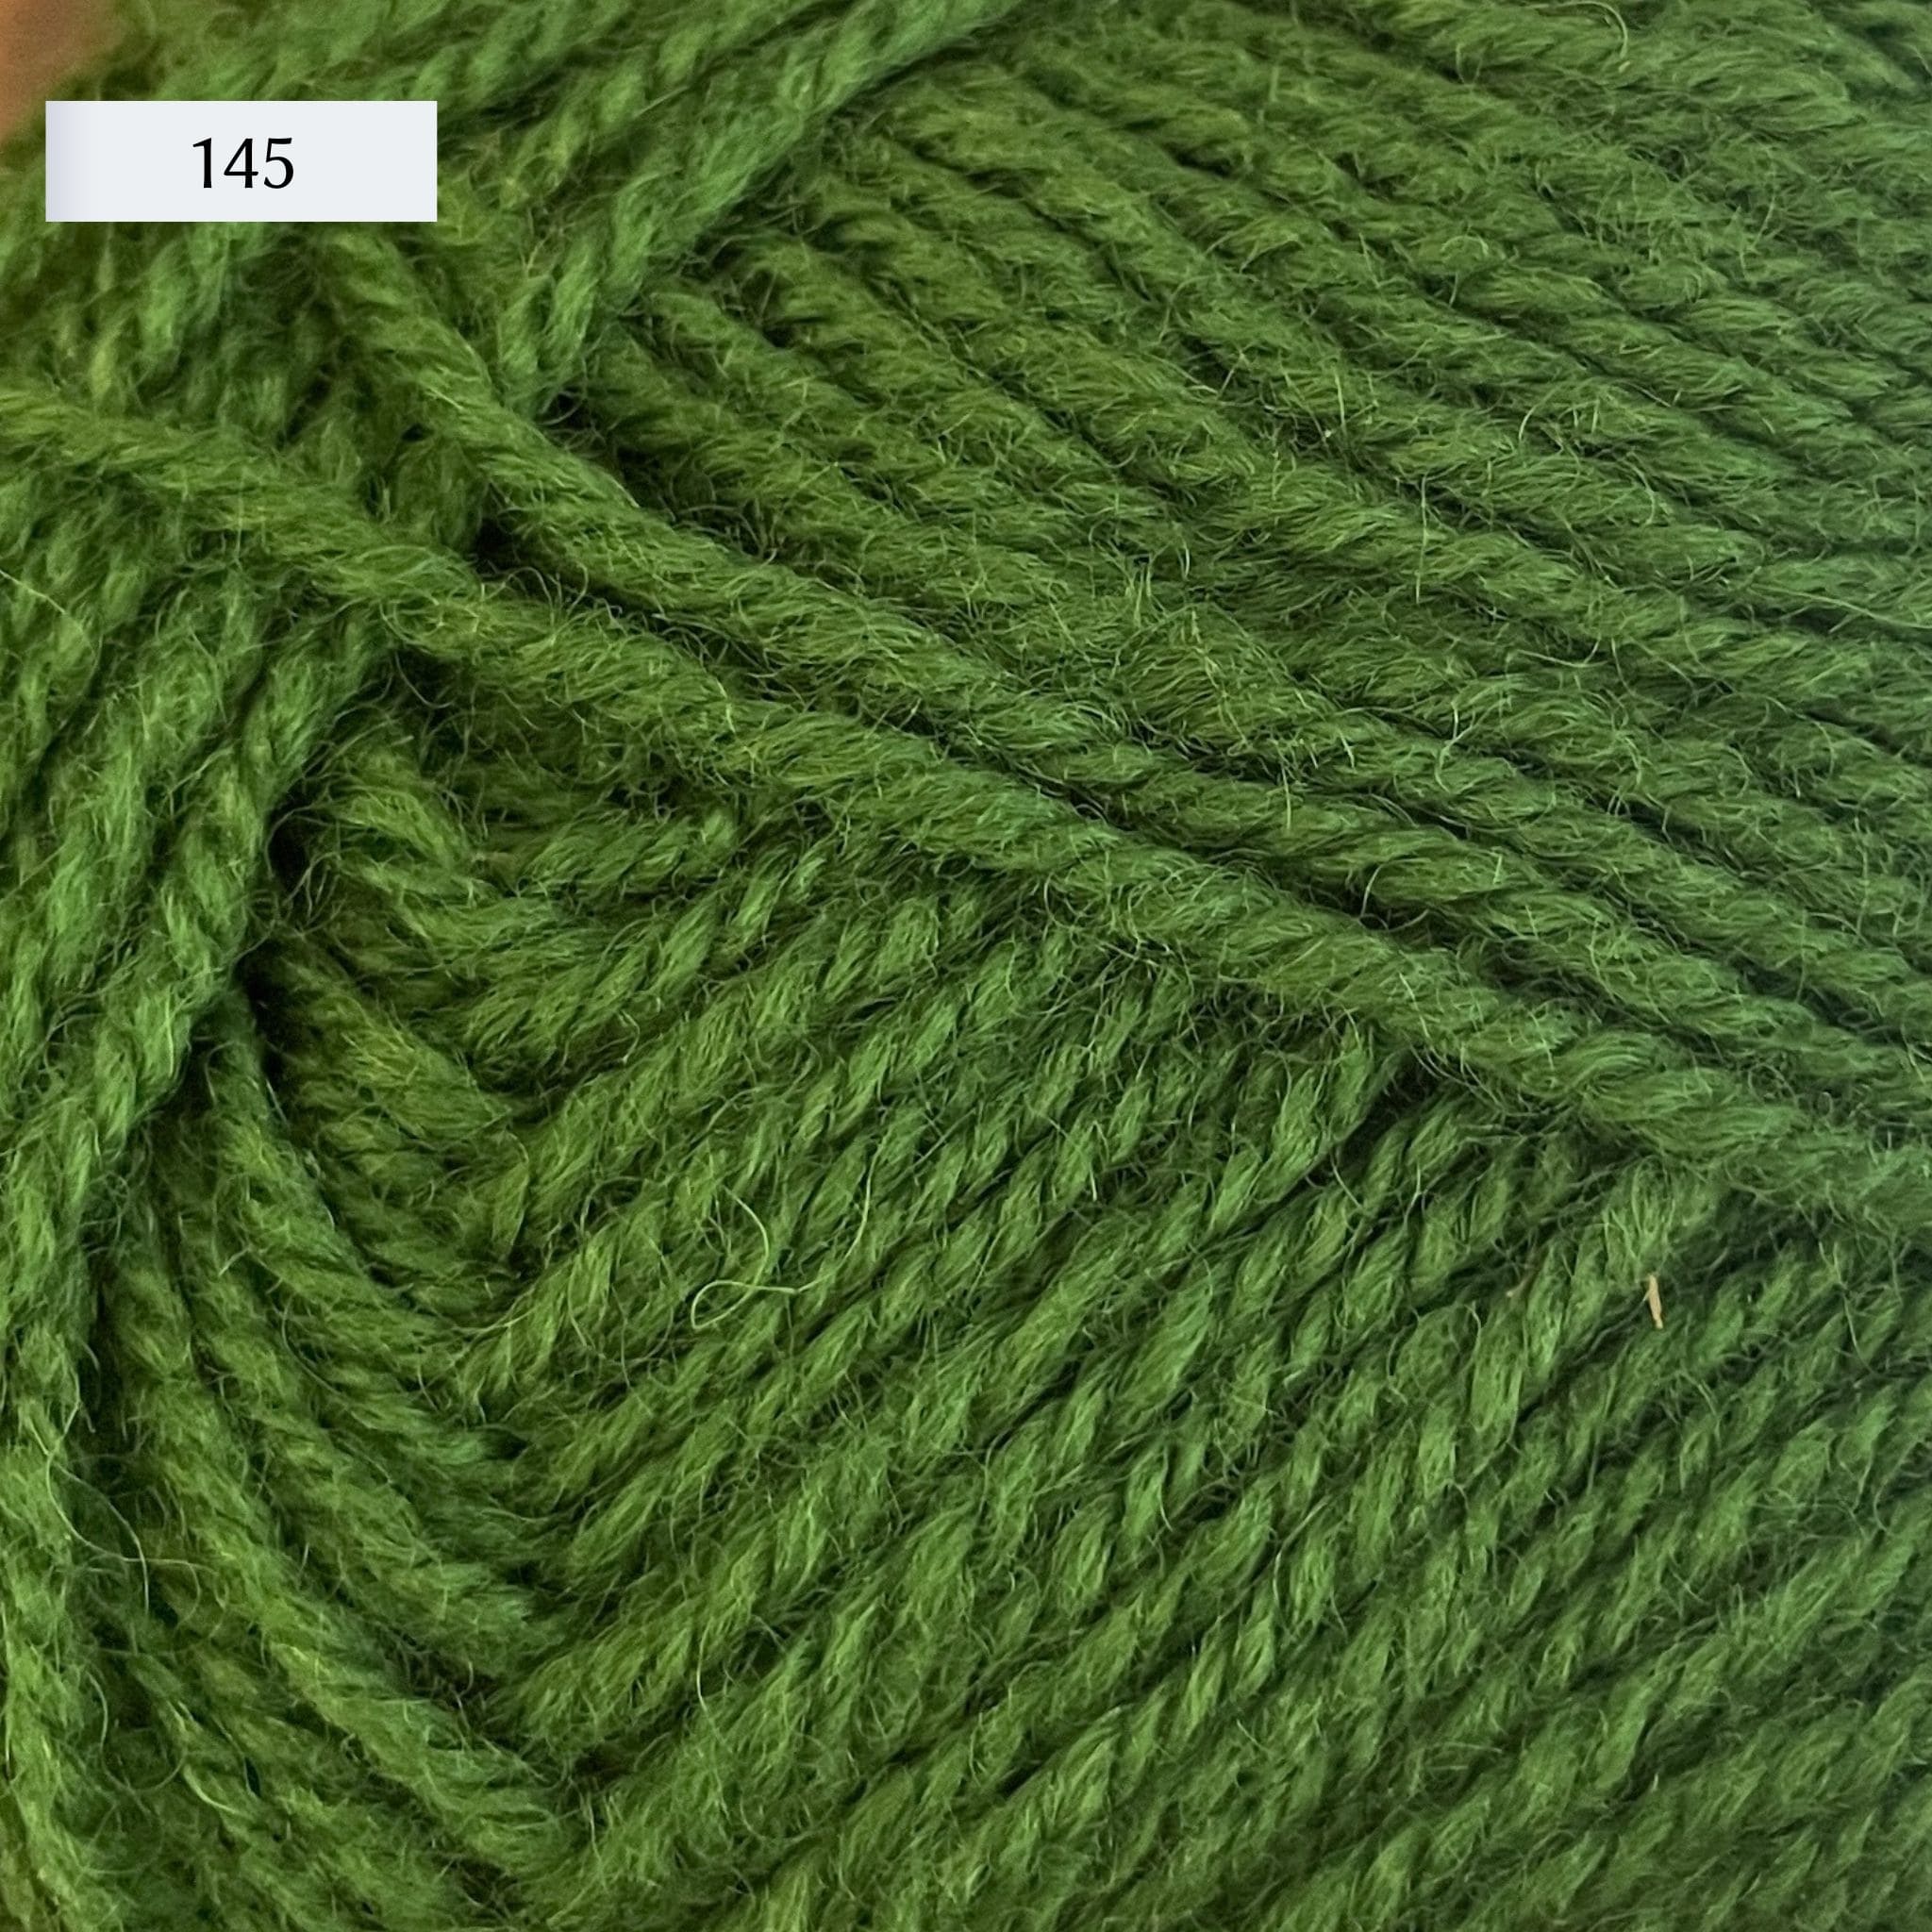 Rauma Strikkegarn, DK weight yarn, in color 145, bright grass green